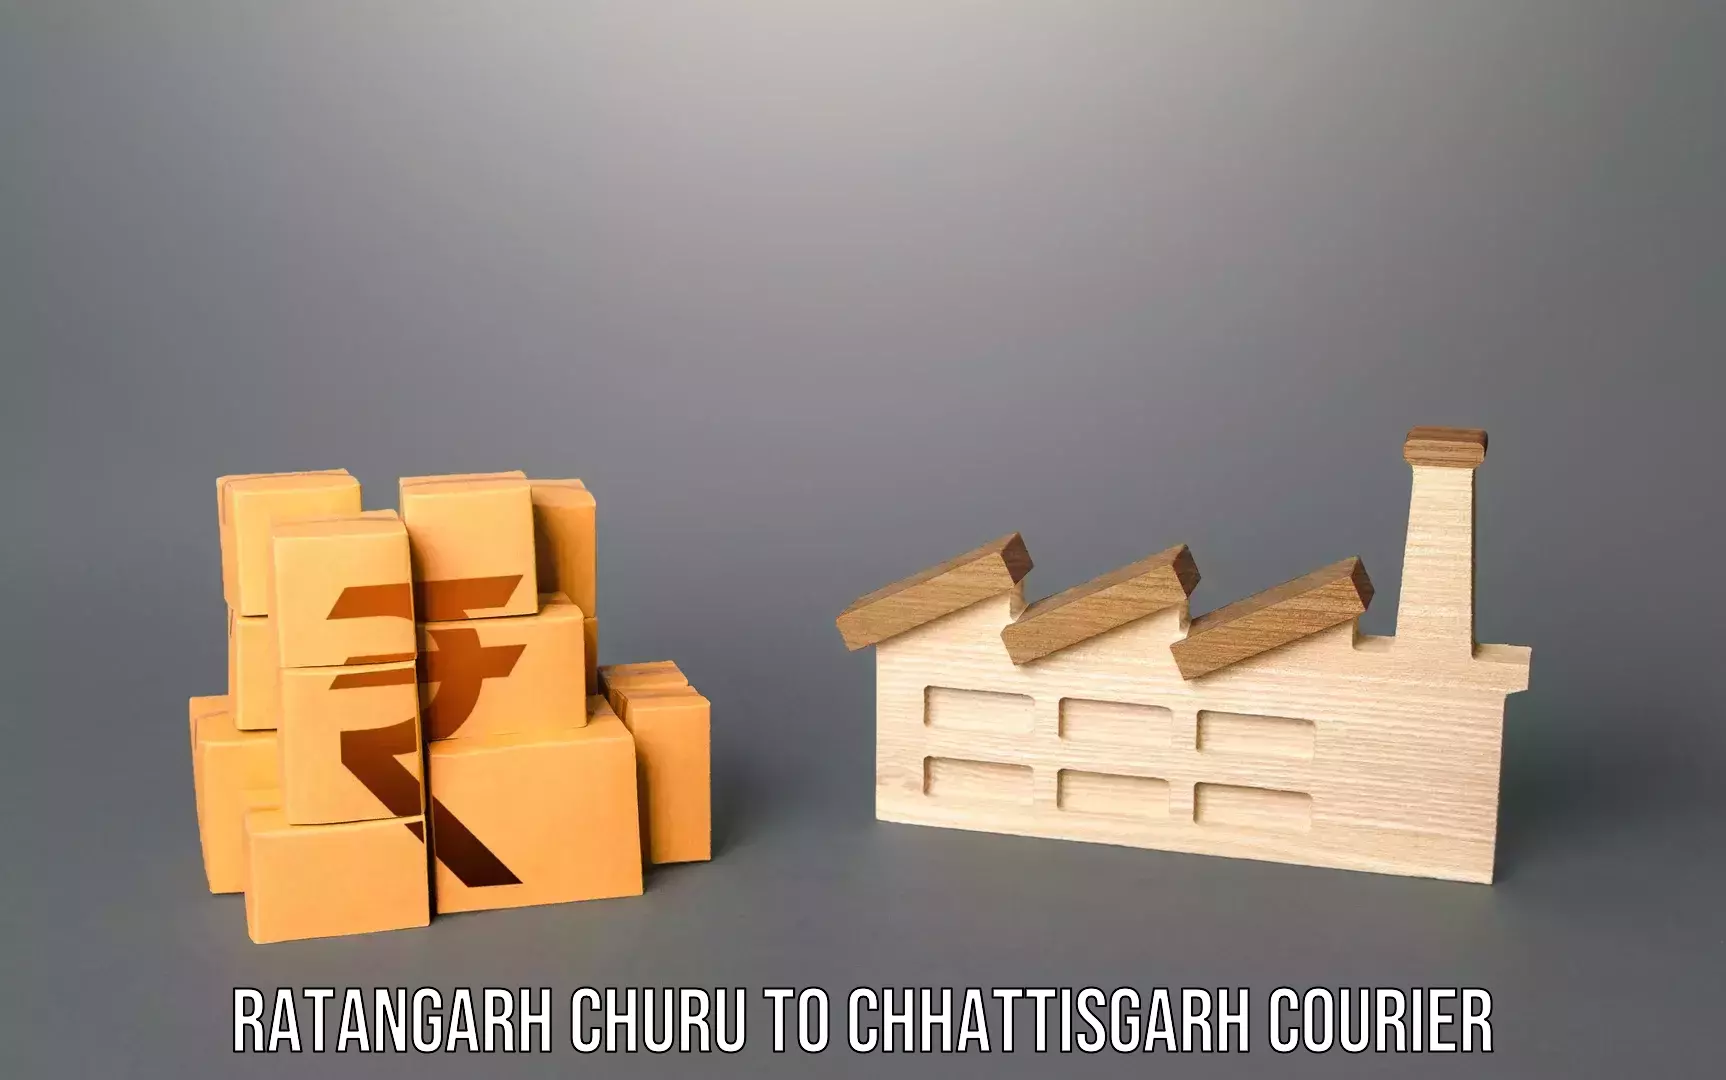 Baggage shipping experience Ratangarh Churu to Raigarh Chhattisgarh